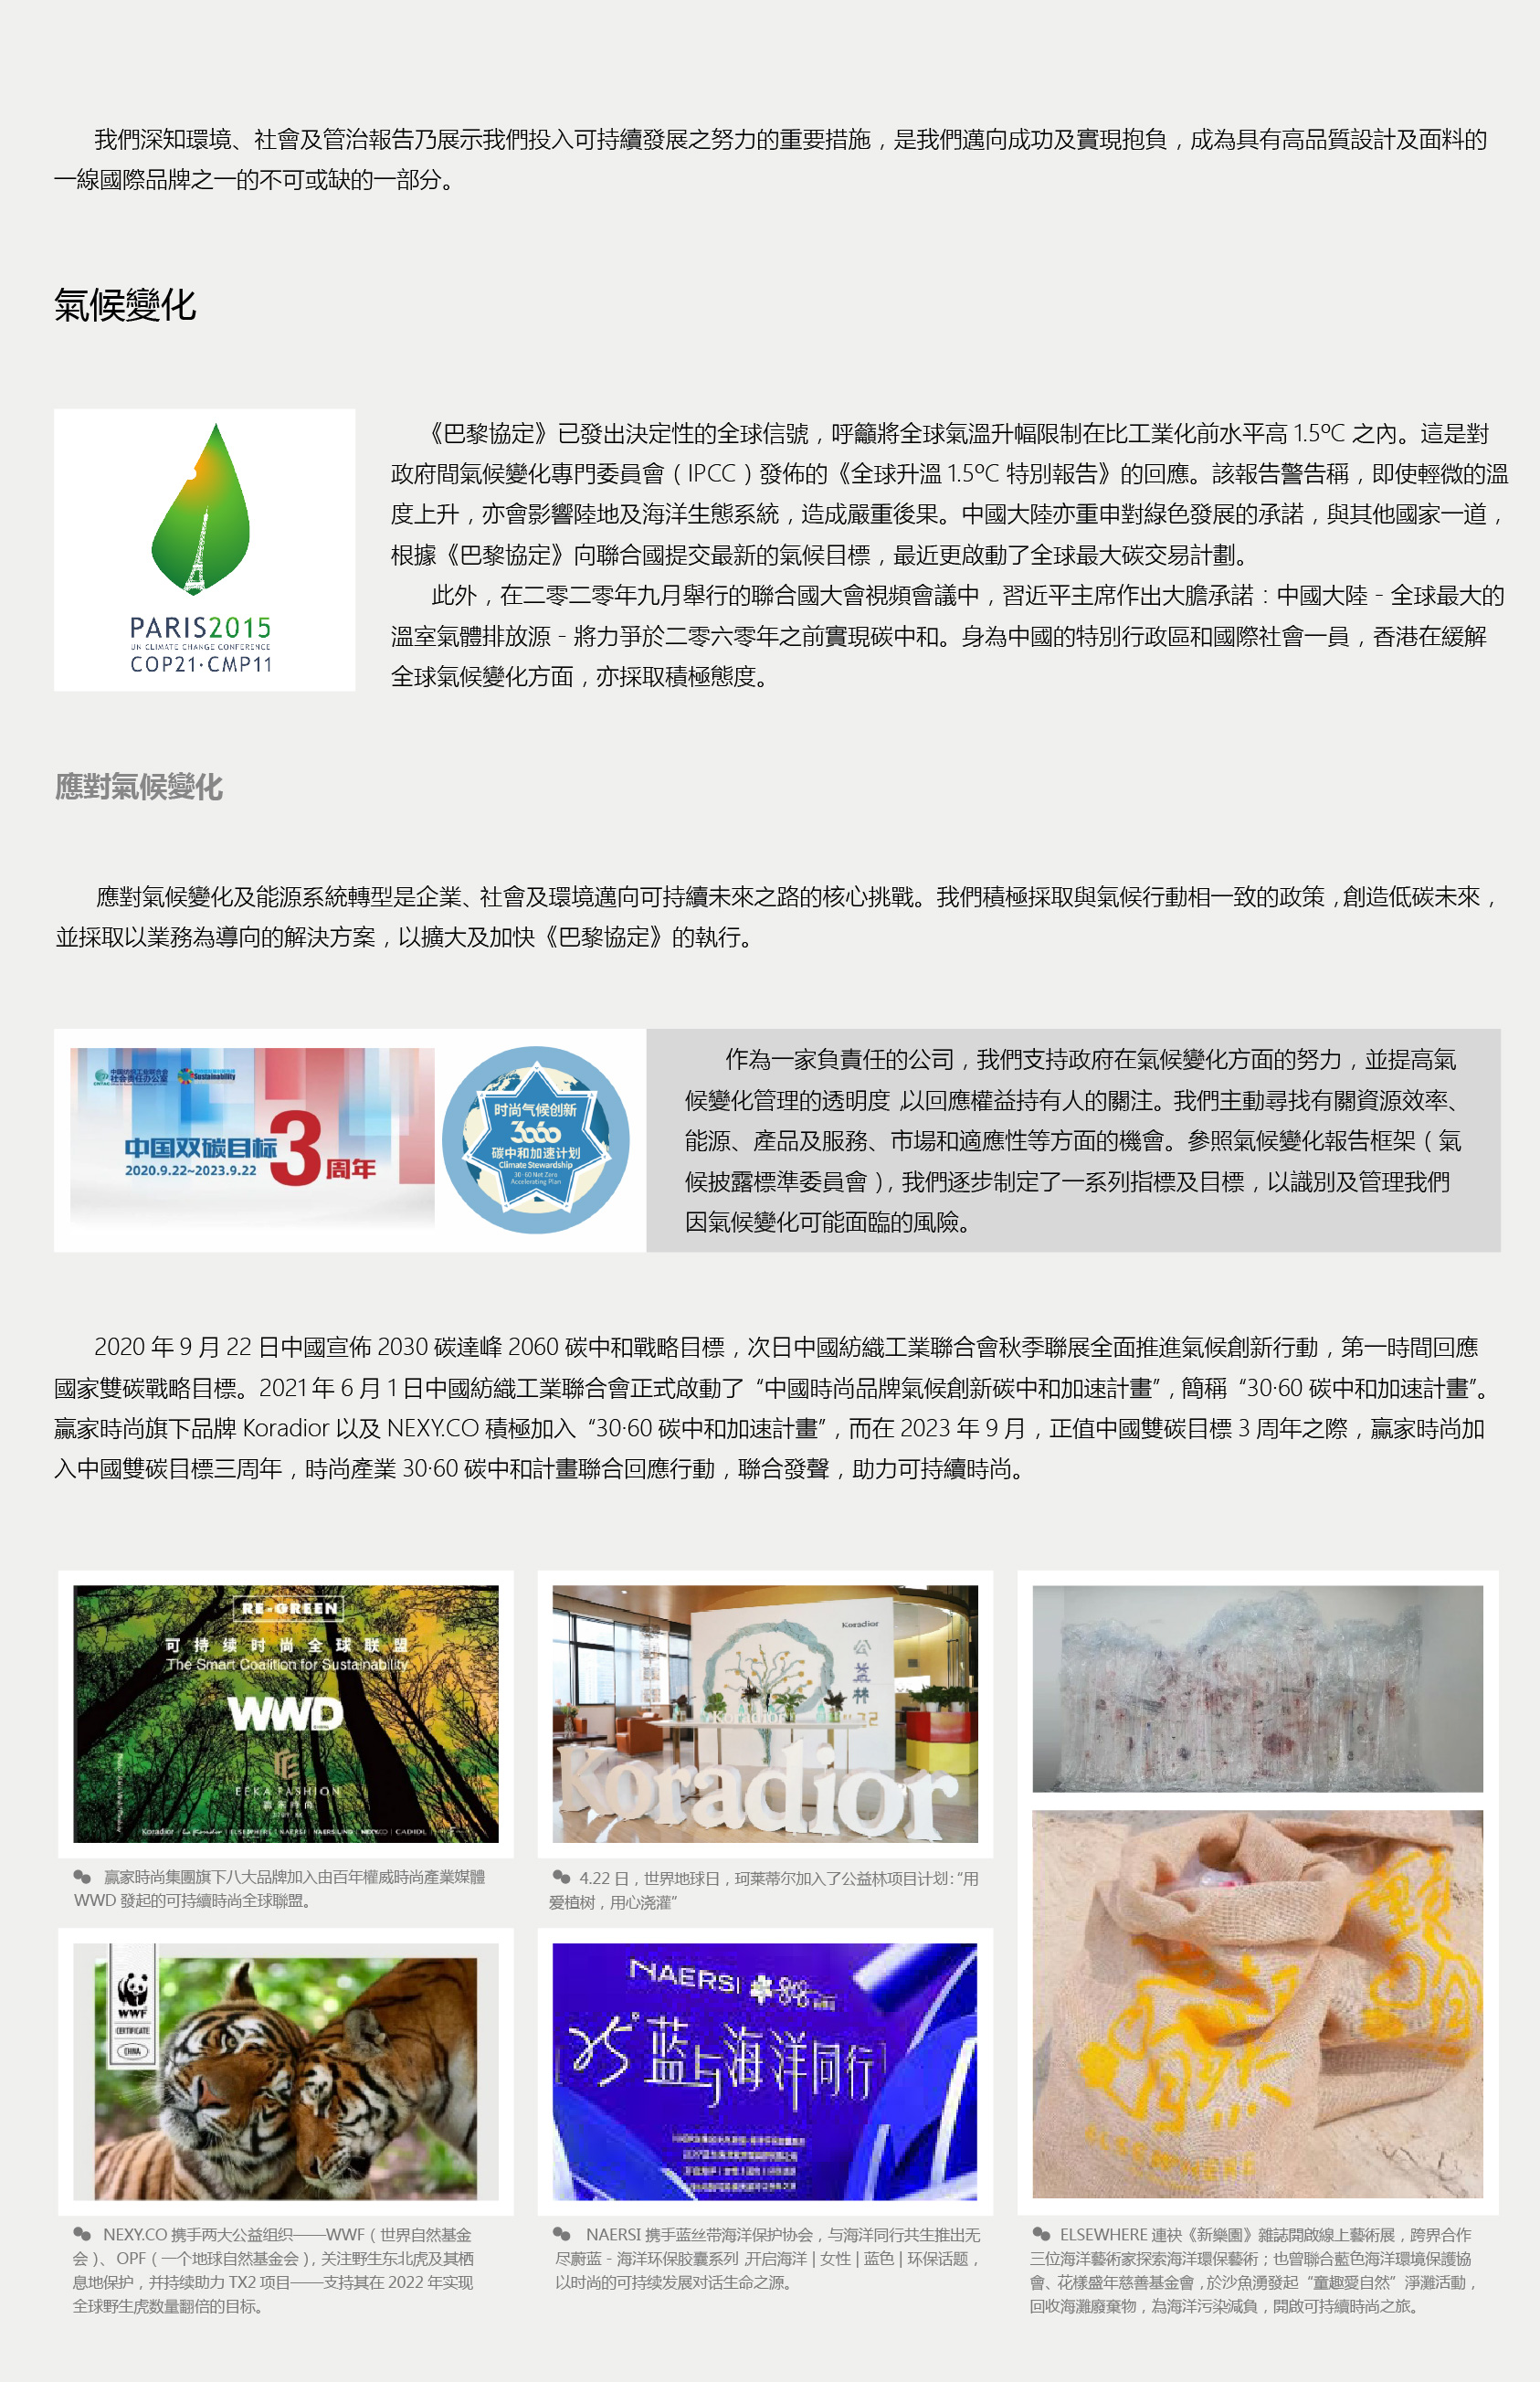 ESG网页设计_画板-1_01.jpg